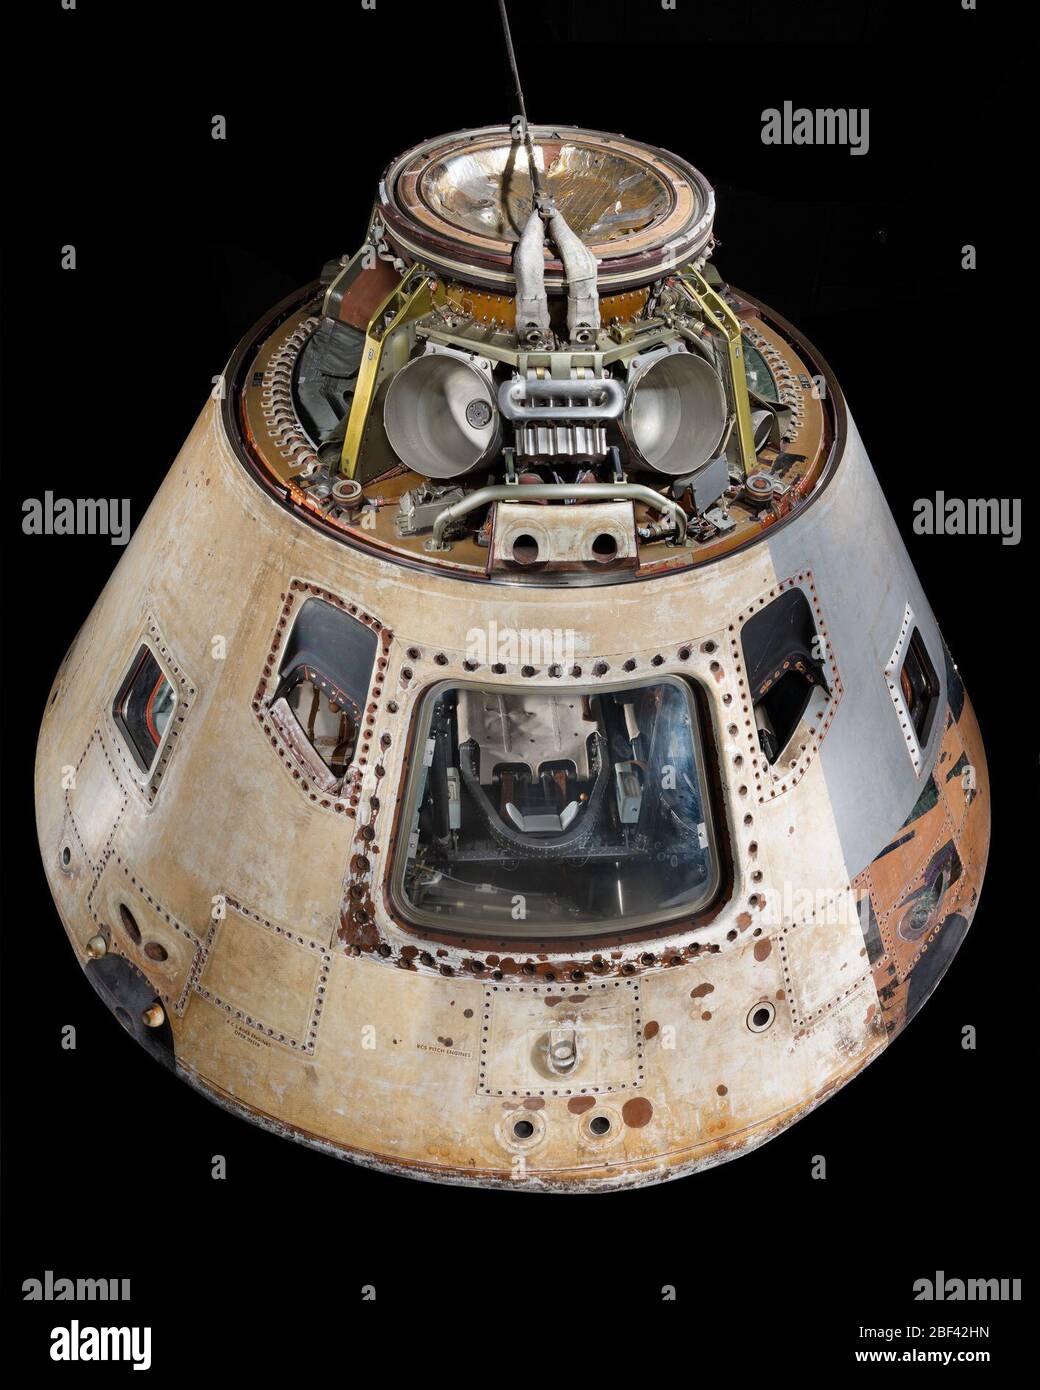 Modulo di comando Skylab 4. Questo è il modulo di comando Skylab 4, che serviva da cabina di equipaggio per andare e andare da Skylab, la prima stazione spaziale statunitense. Skylab 4, la terza e ultima delle missioni Skylab, è stata lanciata il 16 novembre 1973 con i moduli di comando e servizio CSM-118. Foto Stock